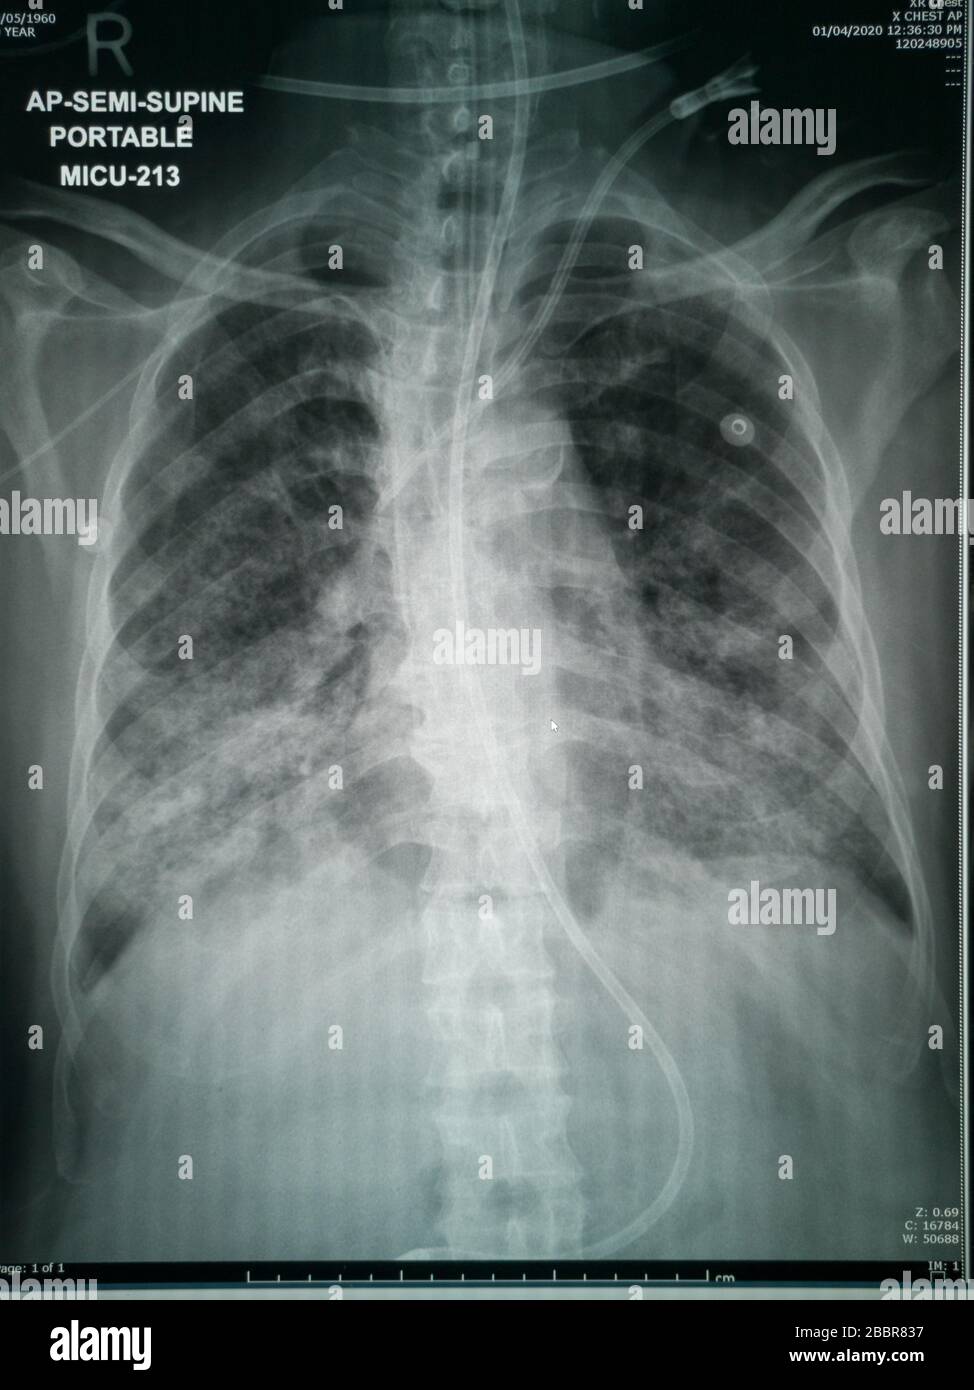 Röntgenbild des Patienten mit Verdacht auf Corona-Virus hochwertige Bilder, die Änderungen in der Lunge aufgrund des Covid-19-Virus mit Bruströhren zeigen Stockfoto